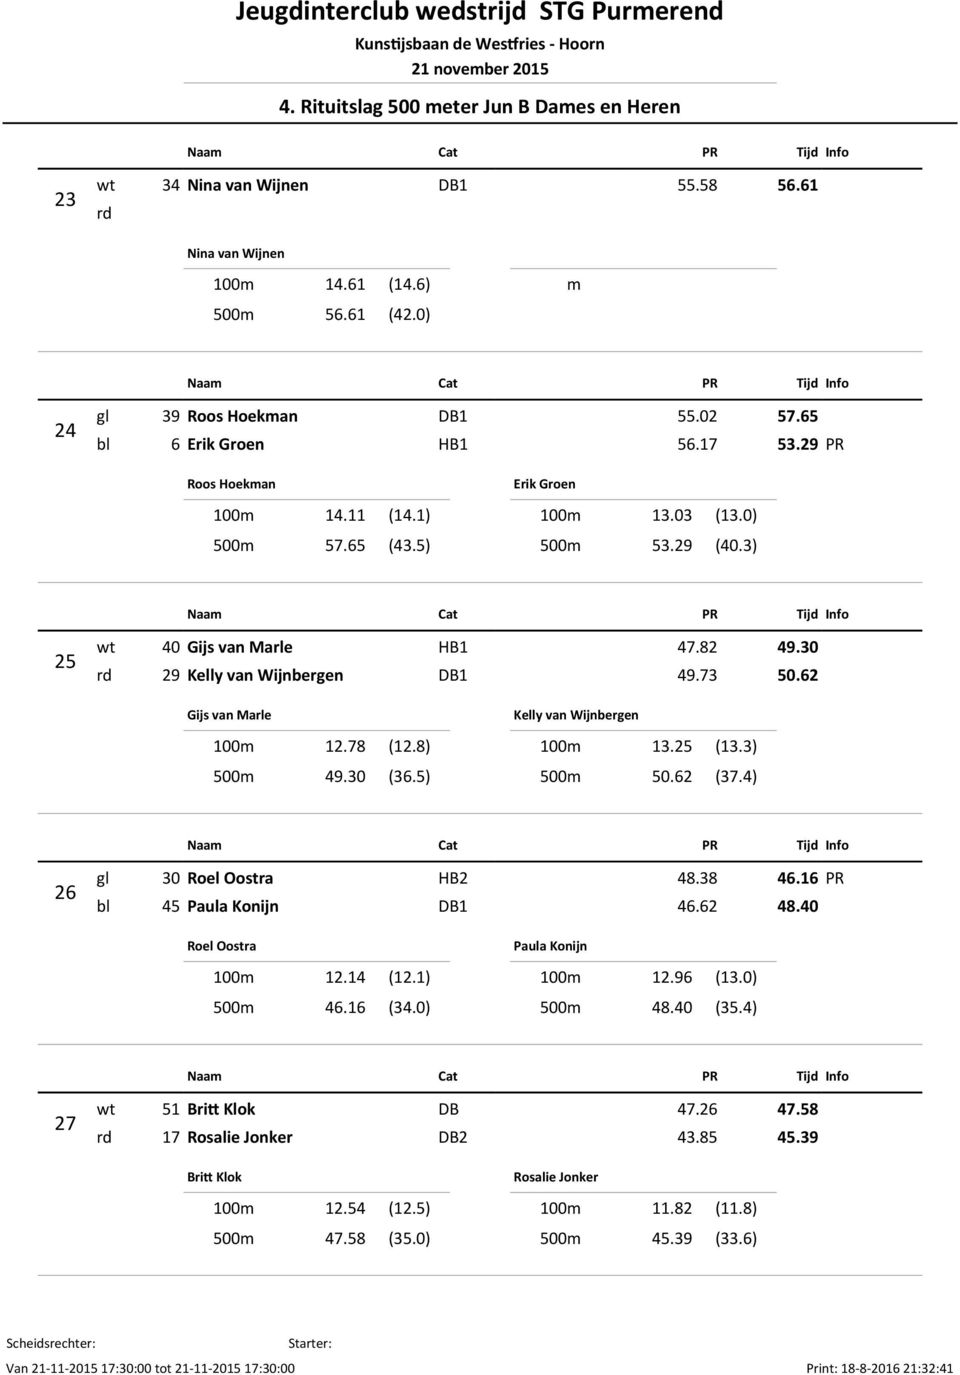 30 rd 29 Kelly van Wijnbergen DB1 49.73 50.62 Gijs van Marle 100m 12.78 (12.8) 500m 49.30 (36.5) Kelly van Wijnbergen 100m 13.25 (13.3) 500m 50.62 (37.4) 26 gl 30 Roel Oostra HB2 48.38 46.